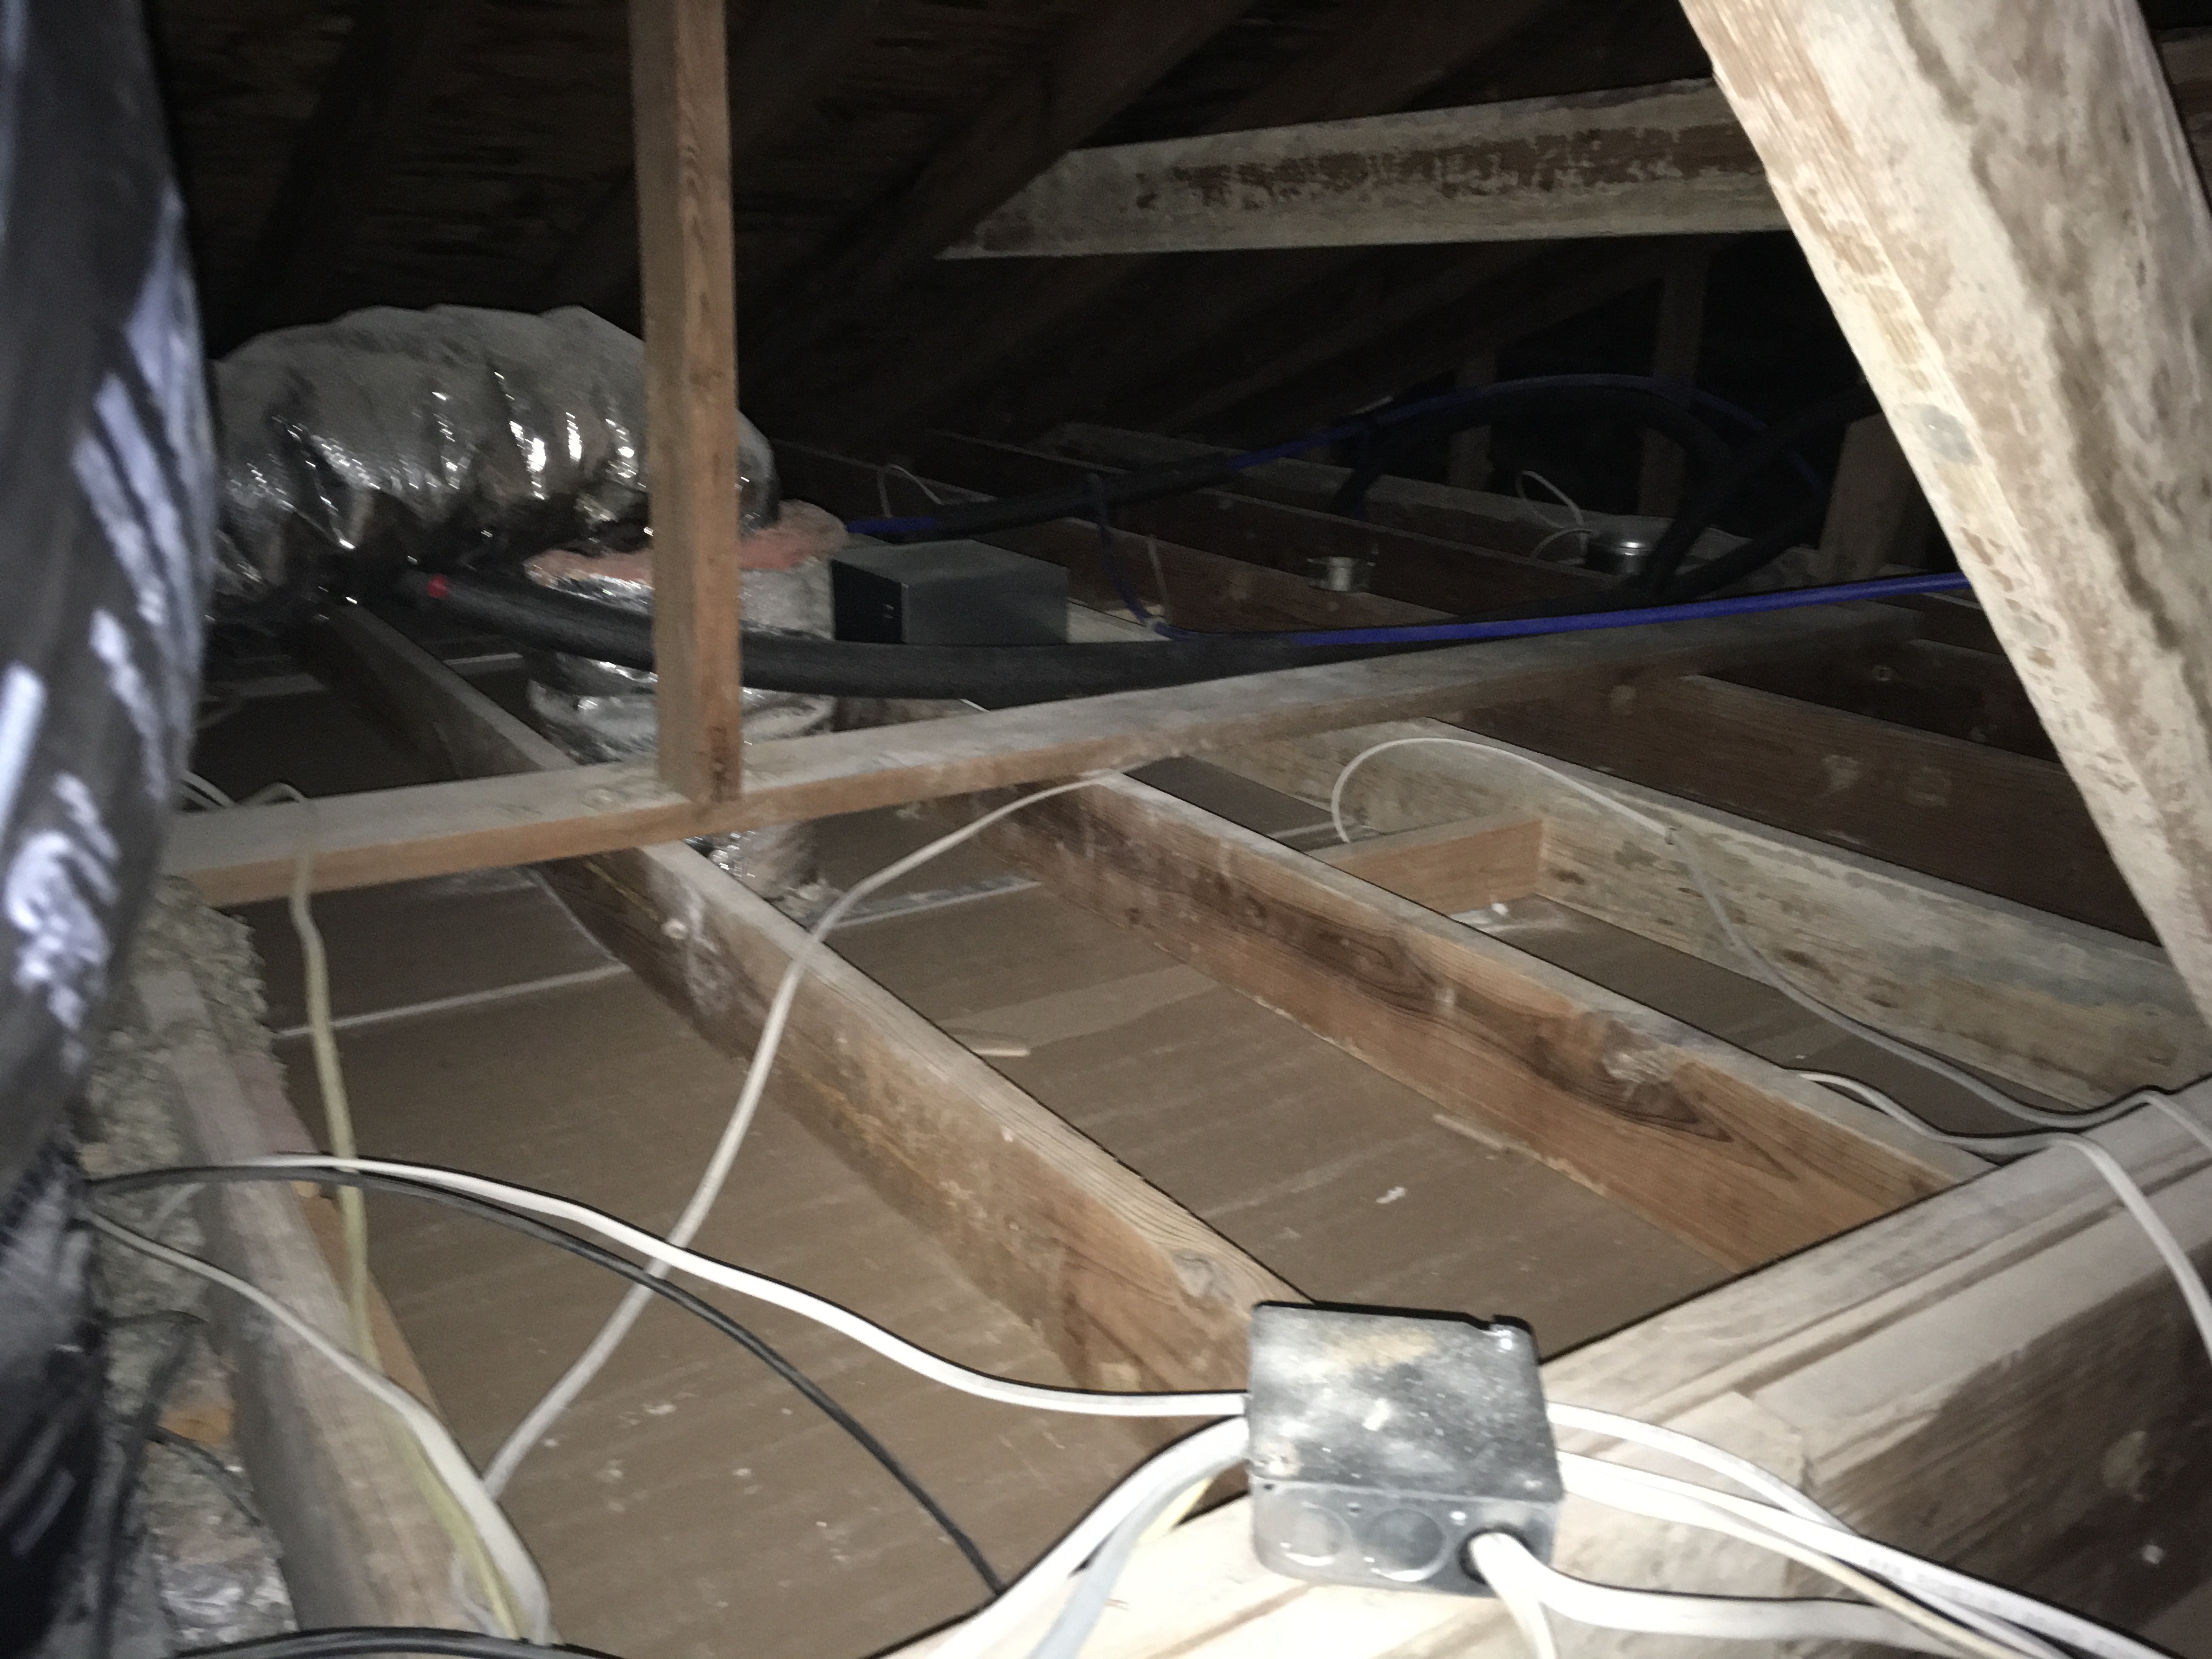 No attic insulation